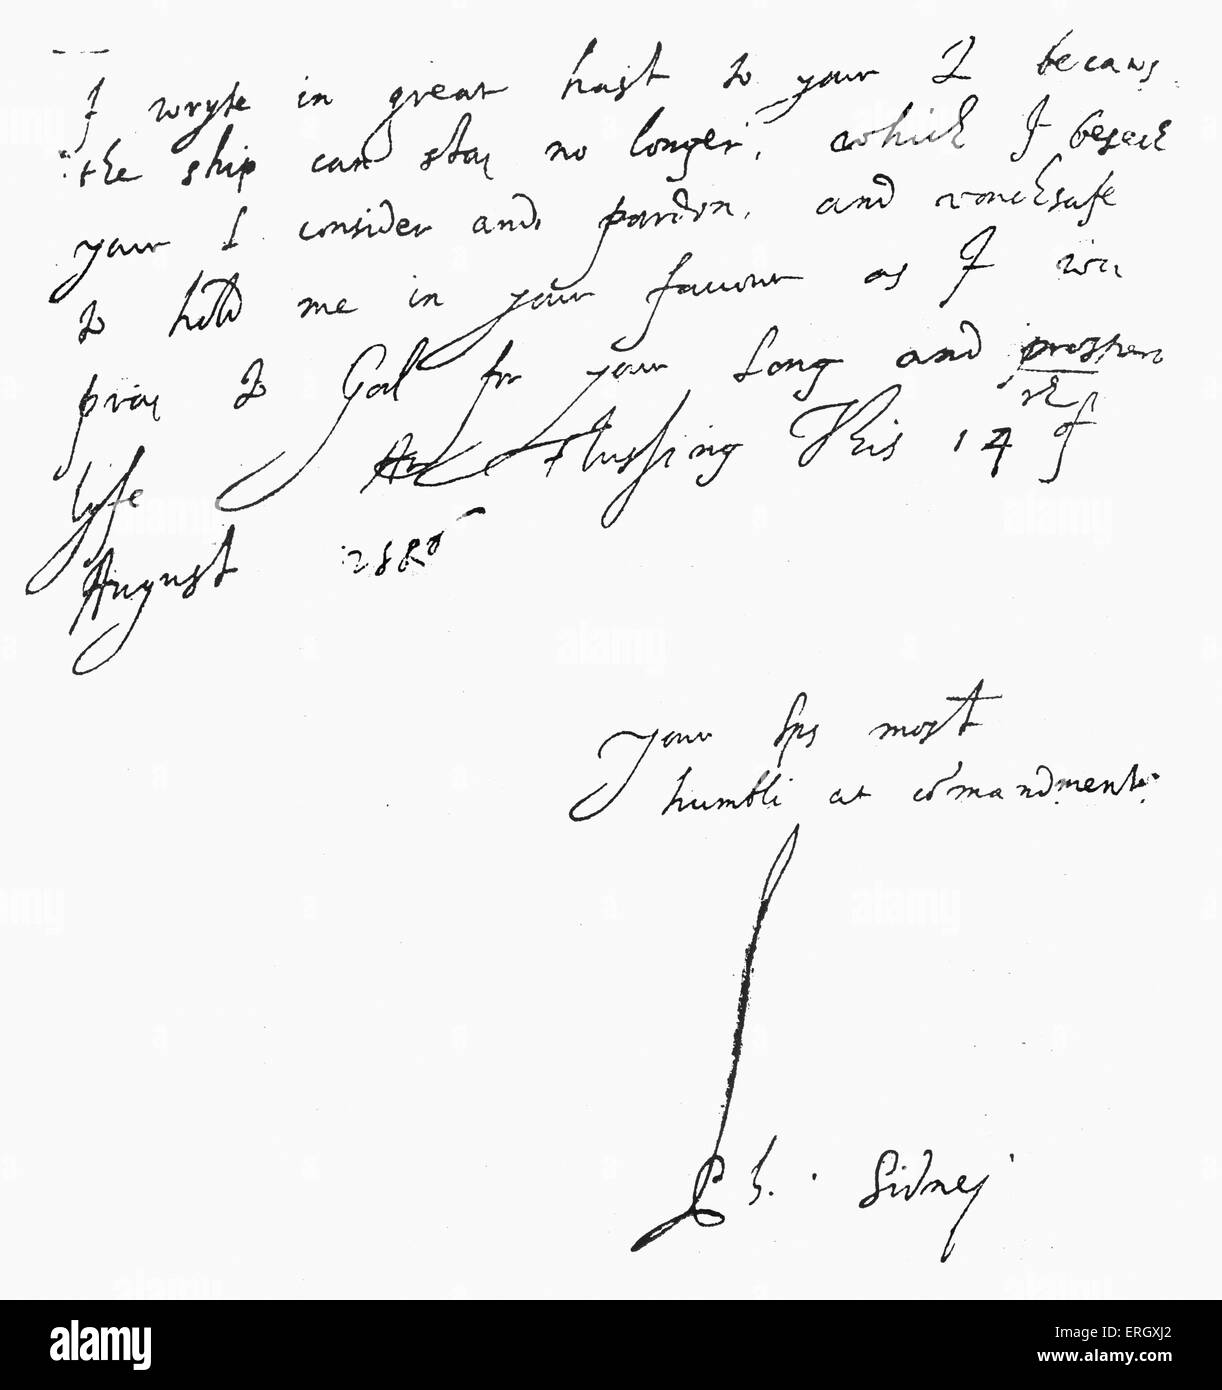 Carta de Philip Sidney a William Cecil, primer barón de Burghley : 15 de agosto de 1506. Manuscrito manuscrito firmado. PH: Inglés Foto de stock